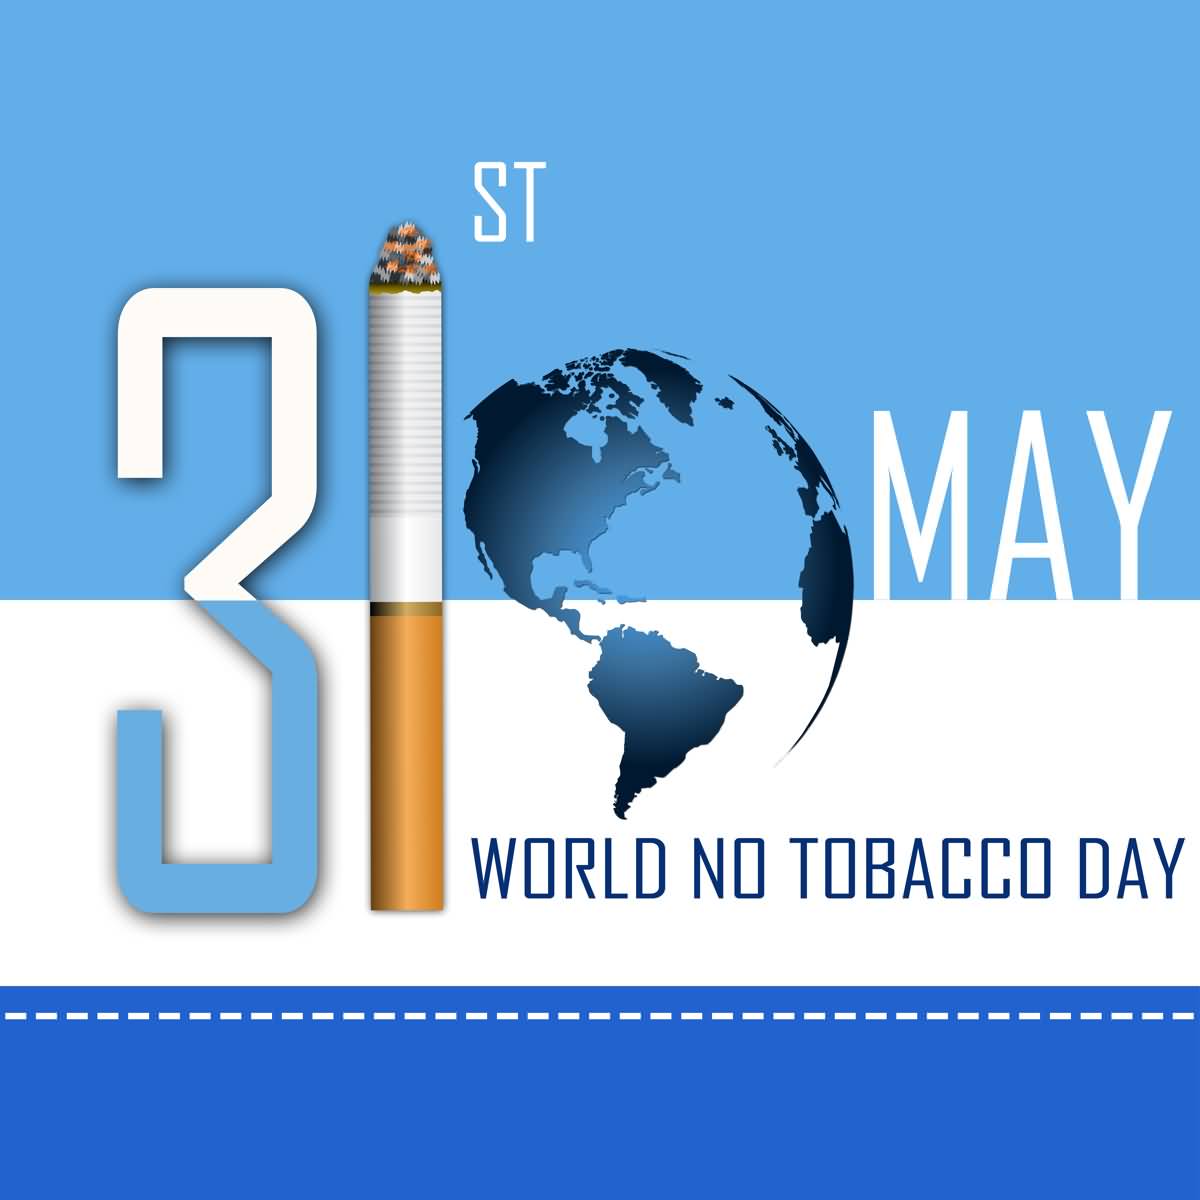 31st May World No Tobacco Day Card